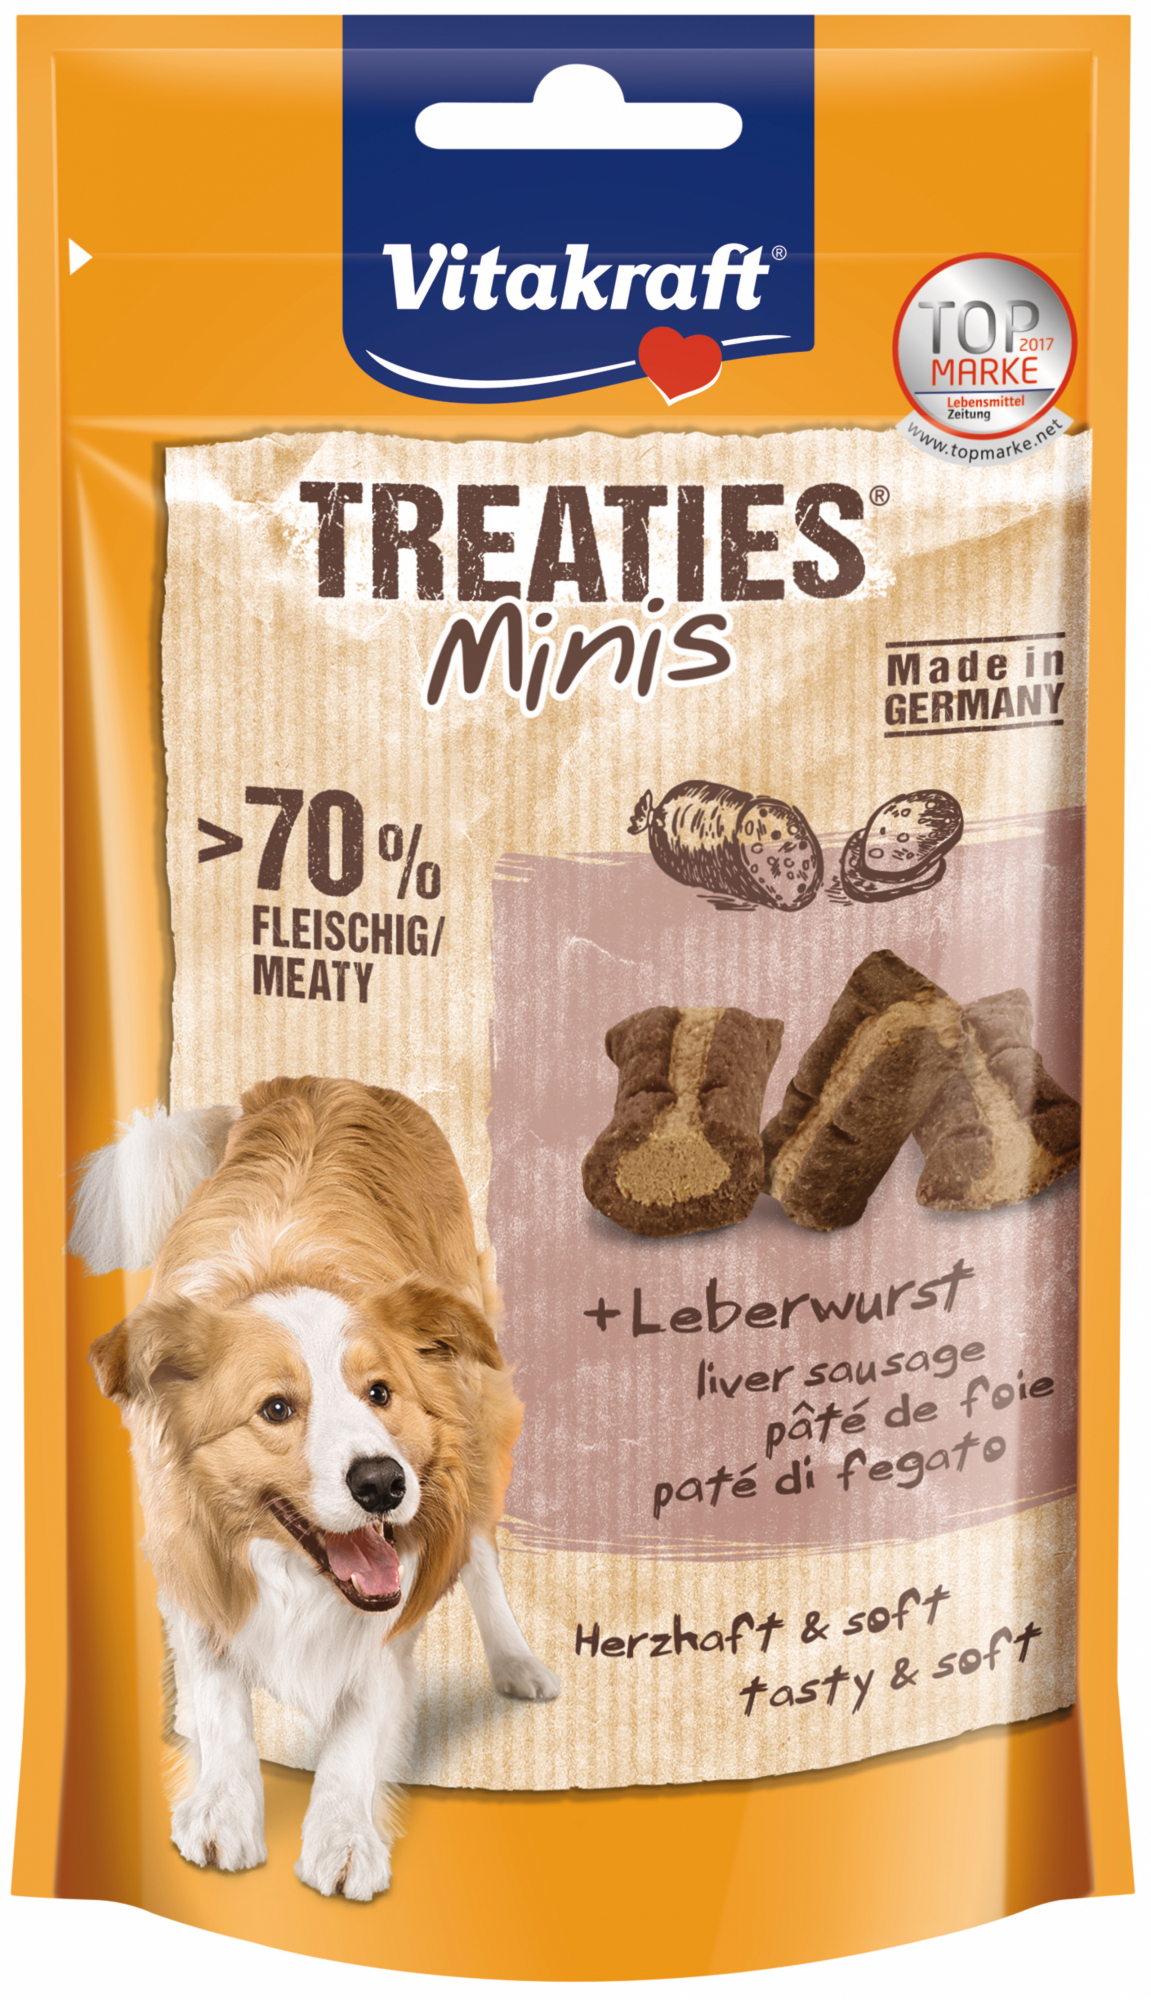 Friandises Treaties Mini pour chien - plusieurs saveurs disponibles